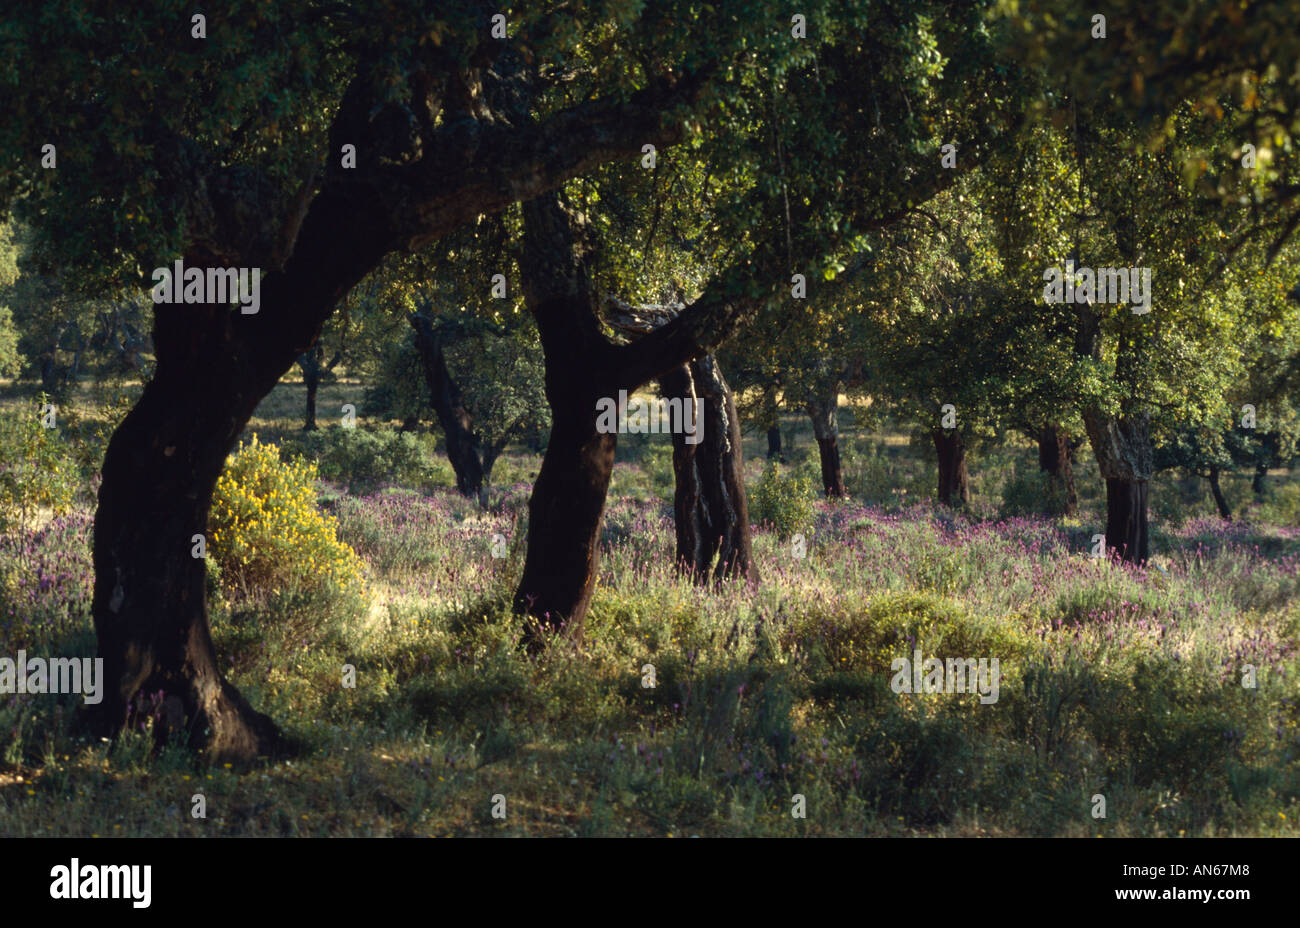 Korkeichen Quercus ruber Extremadura Spanien Spain Stock Photo